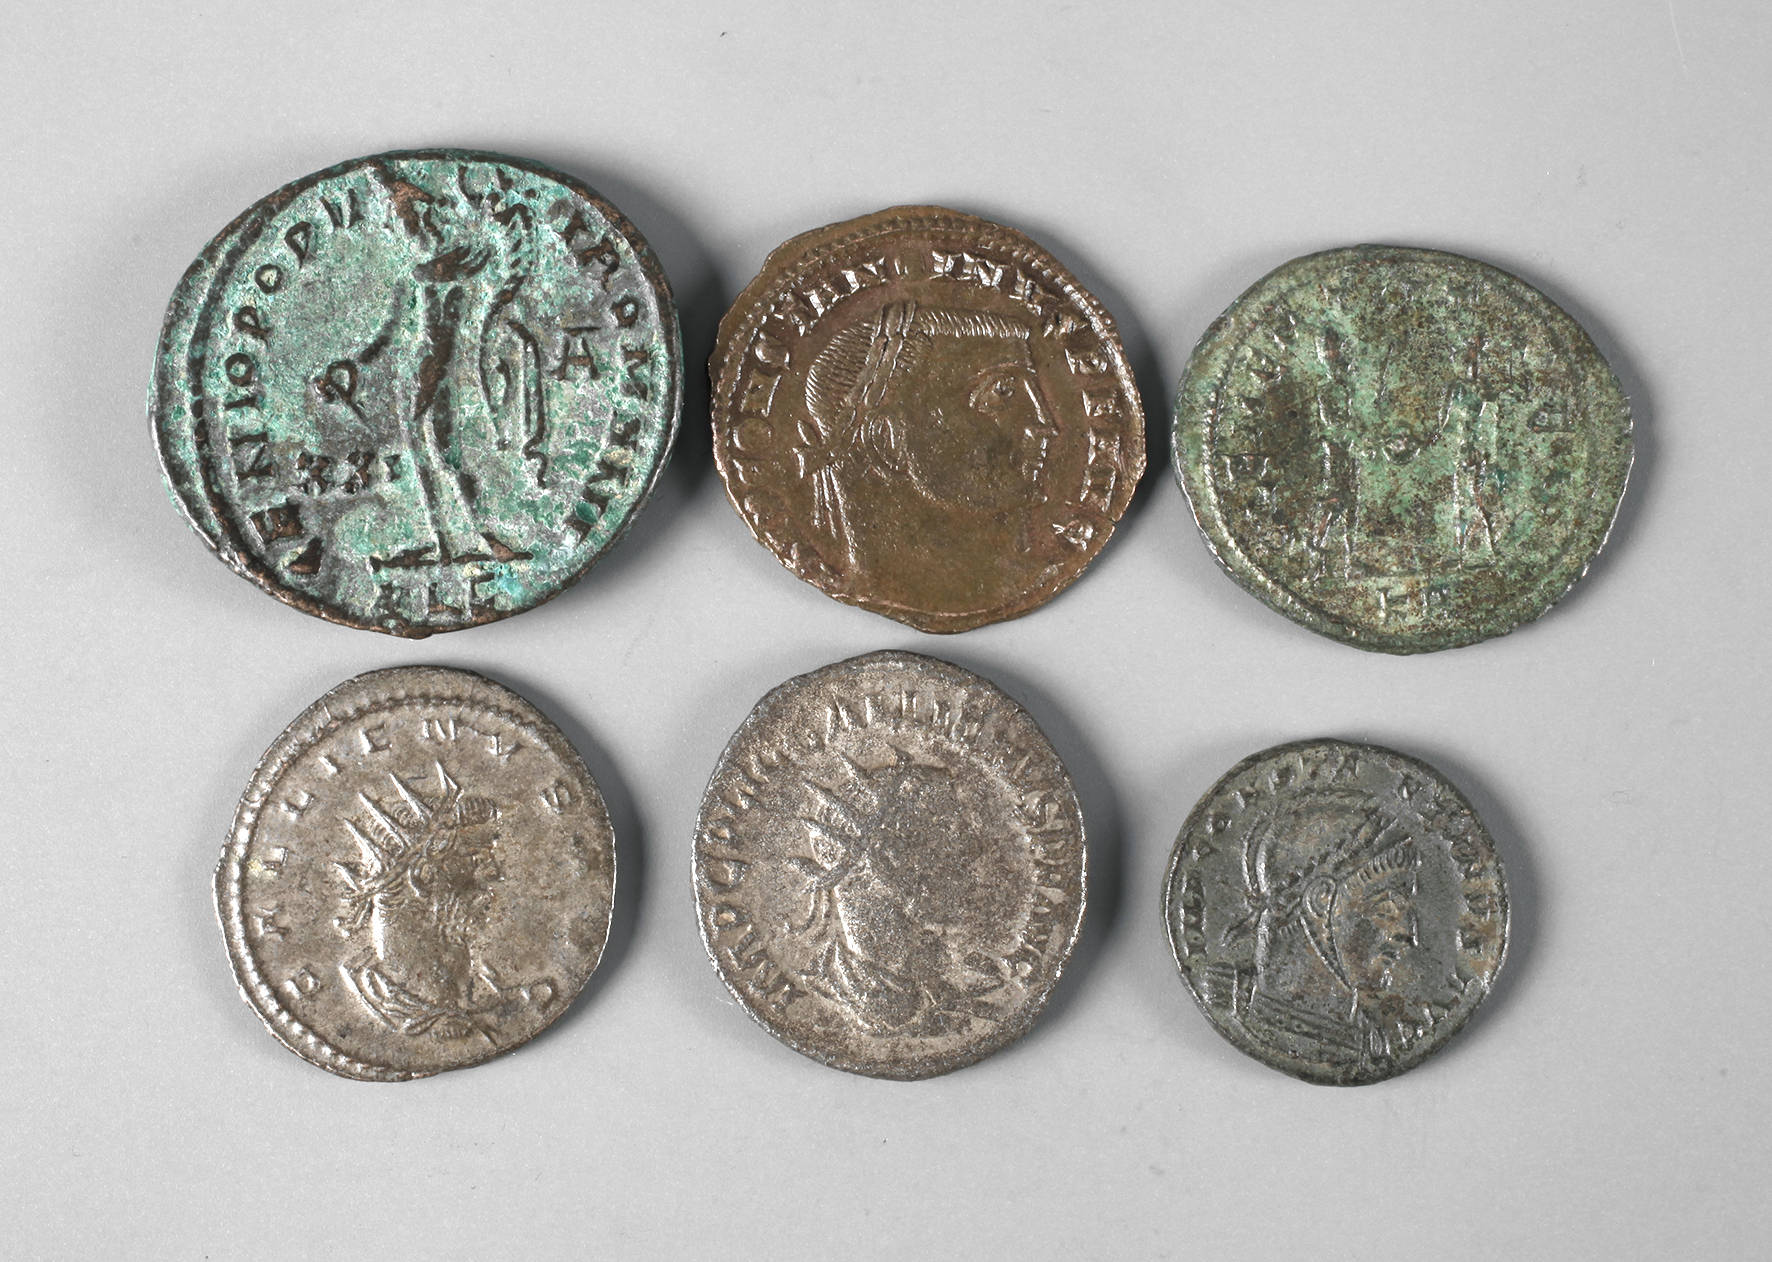 Sechs Münzen römische Kaiserzeit